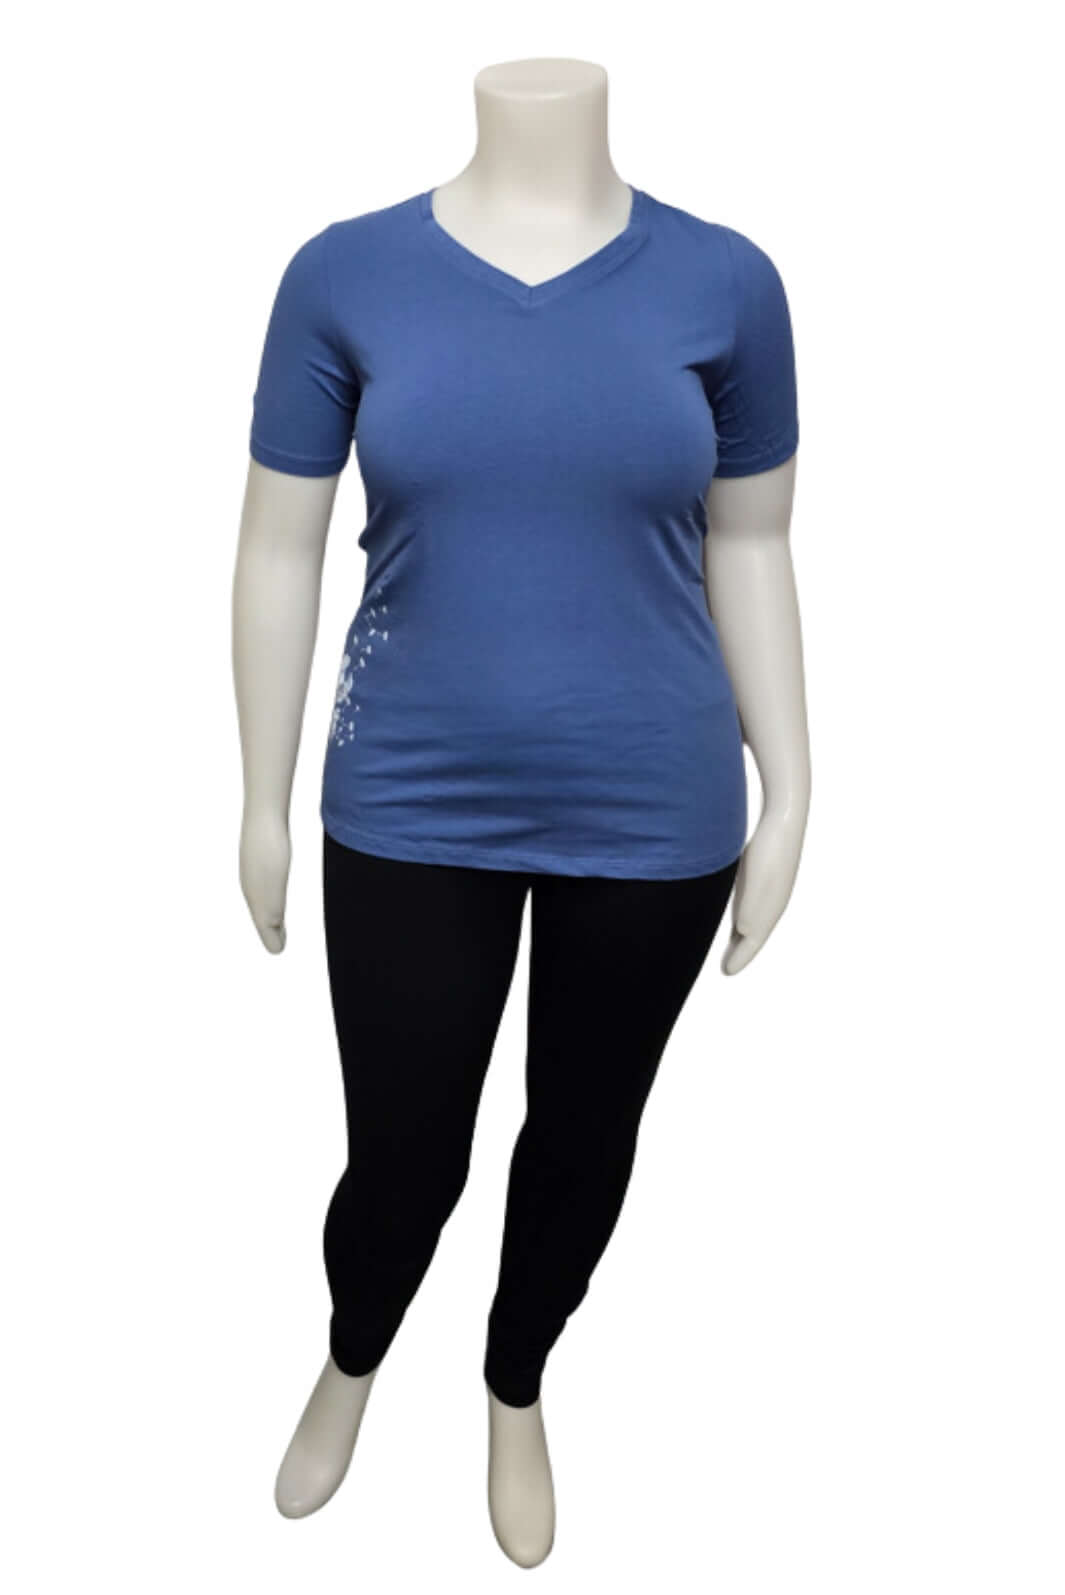 T-Shirt Bleu Manches courtes Dandelion Taille Plus de Sportive Plus